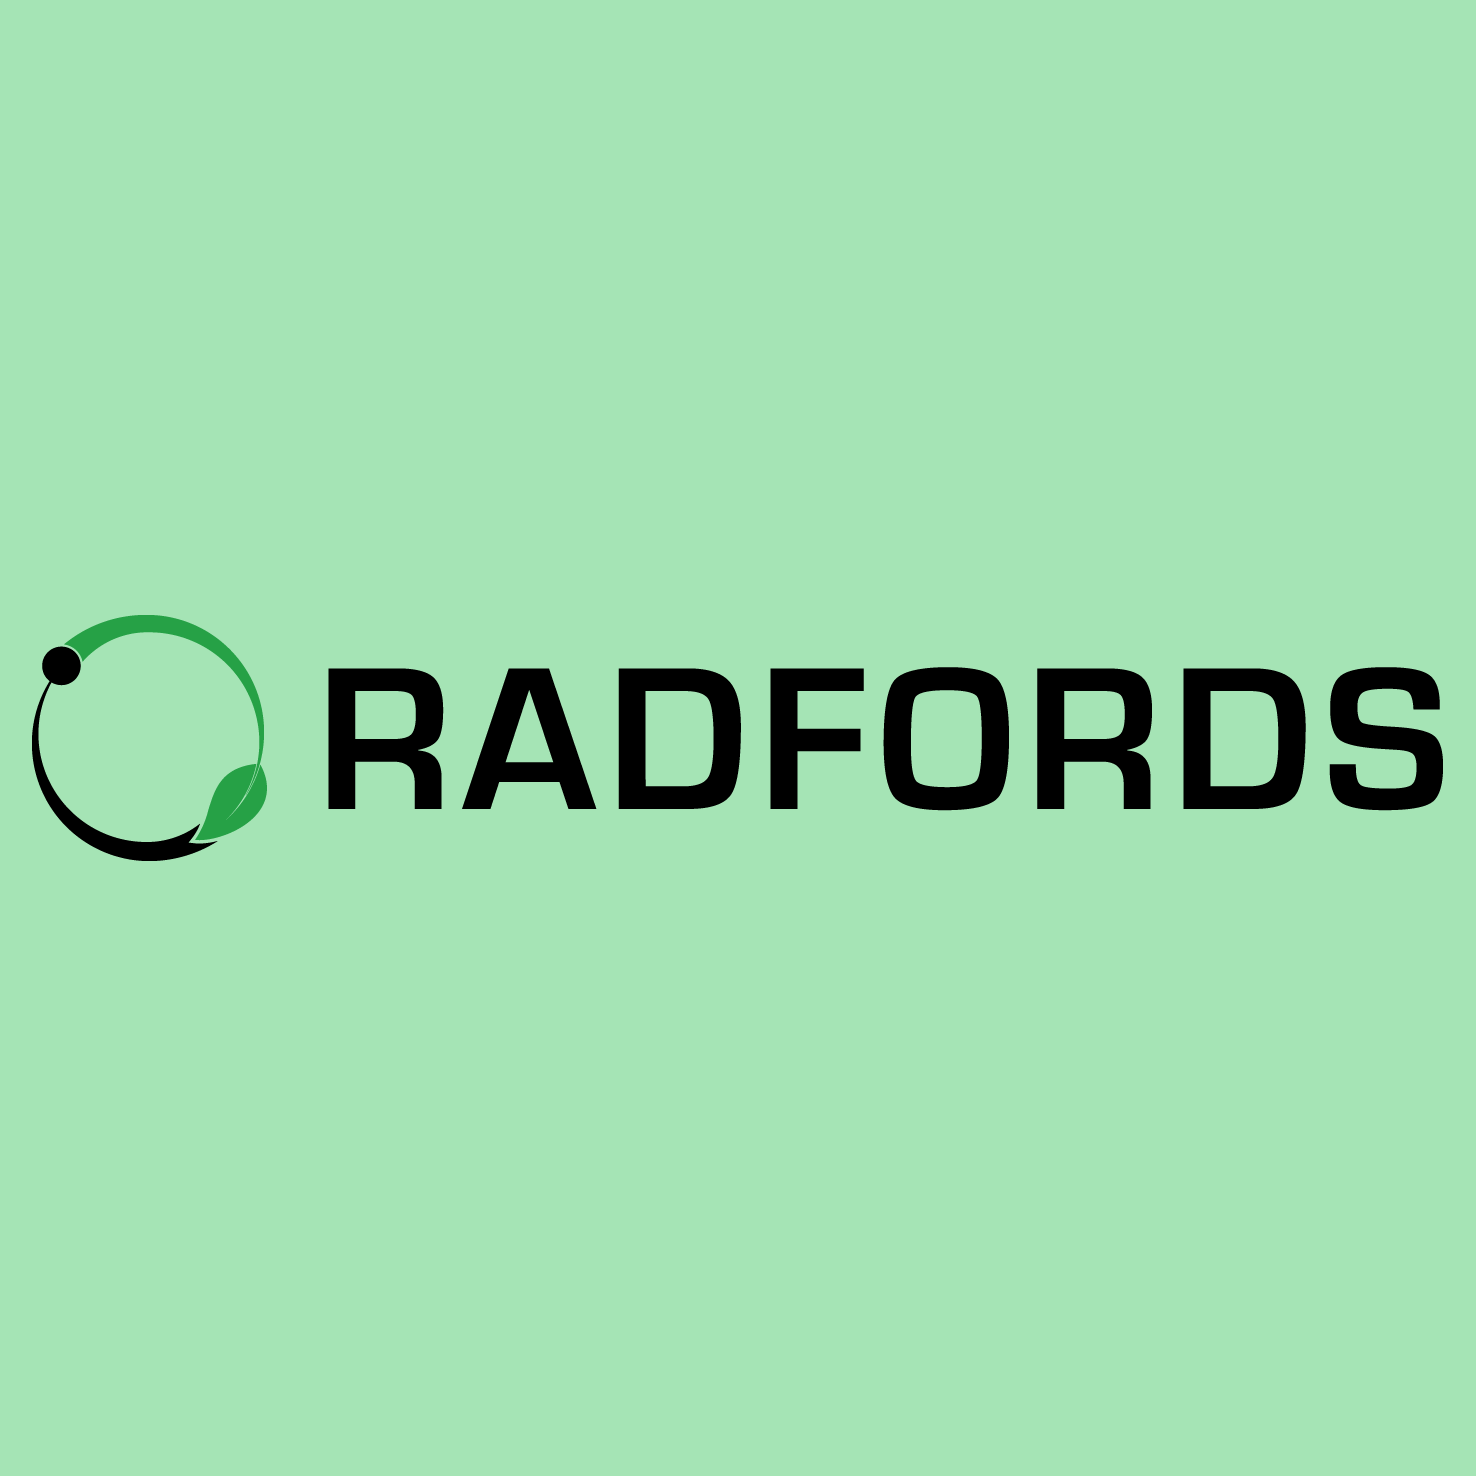 radfords-logo.png